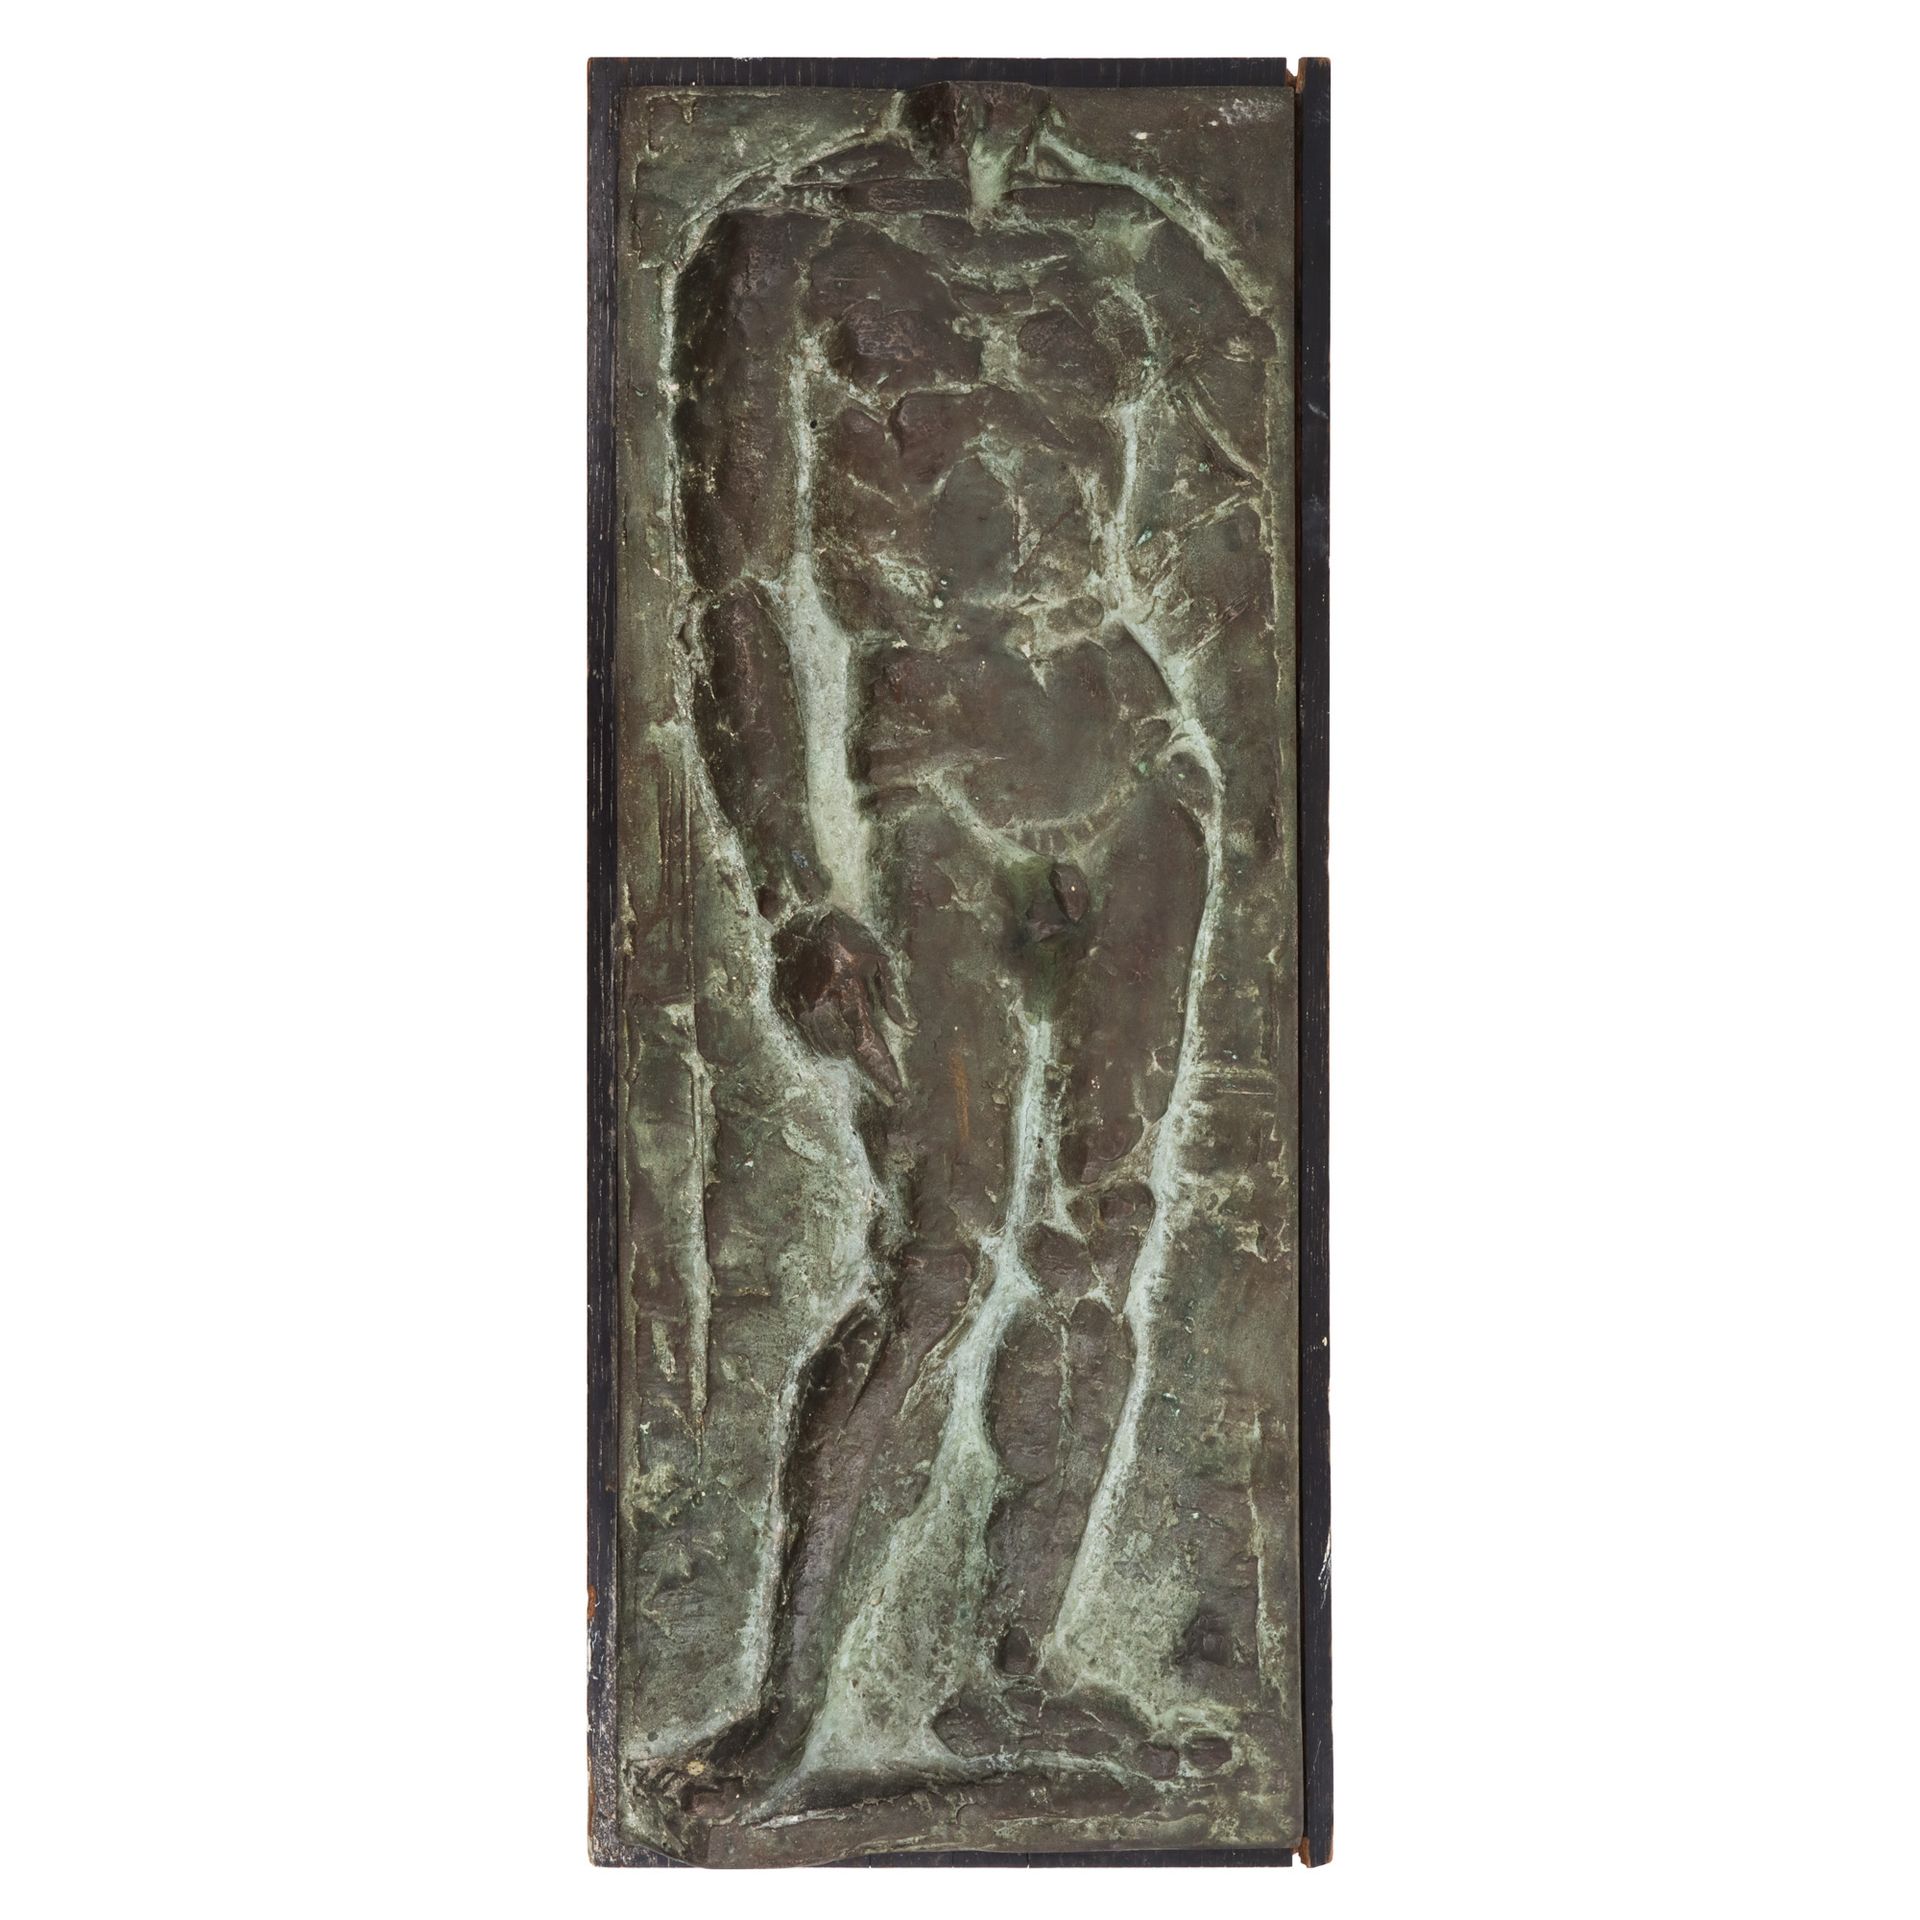 Romul Ladea, Male Nude bronze, 52.5 x 20.5 x 4, signed lower right, "R. Ladea"